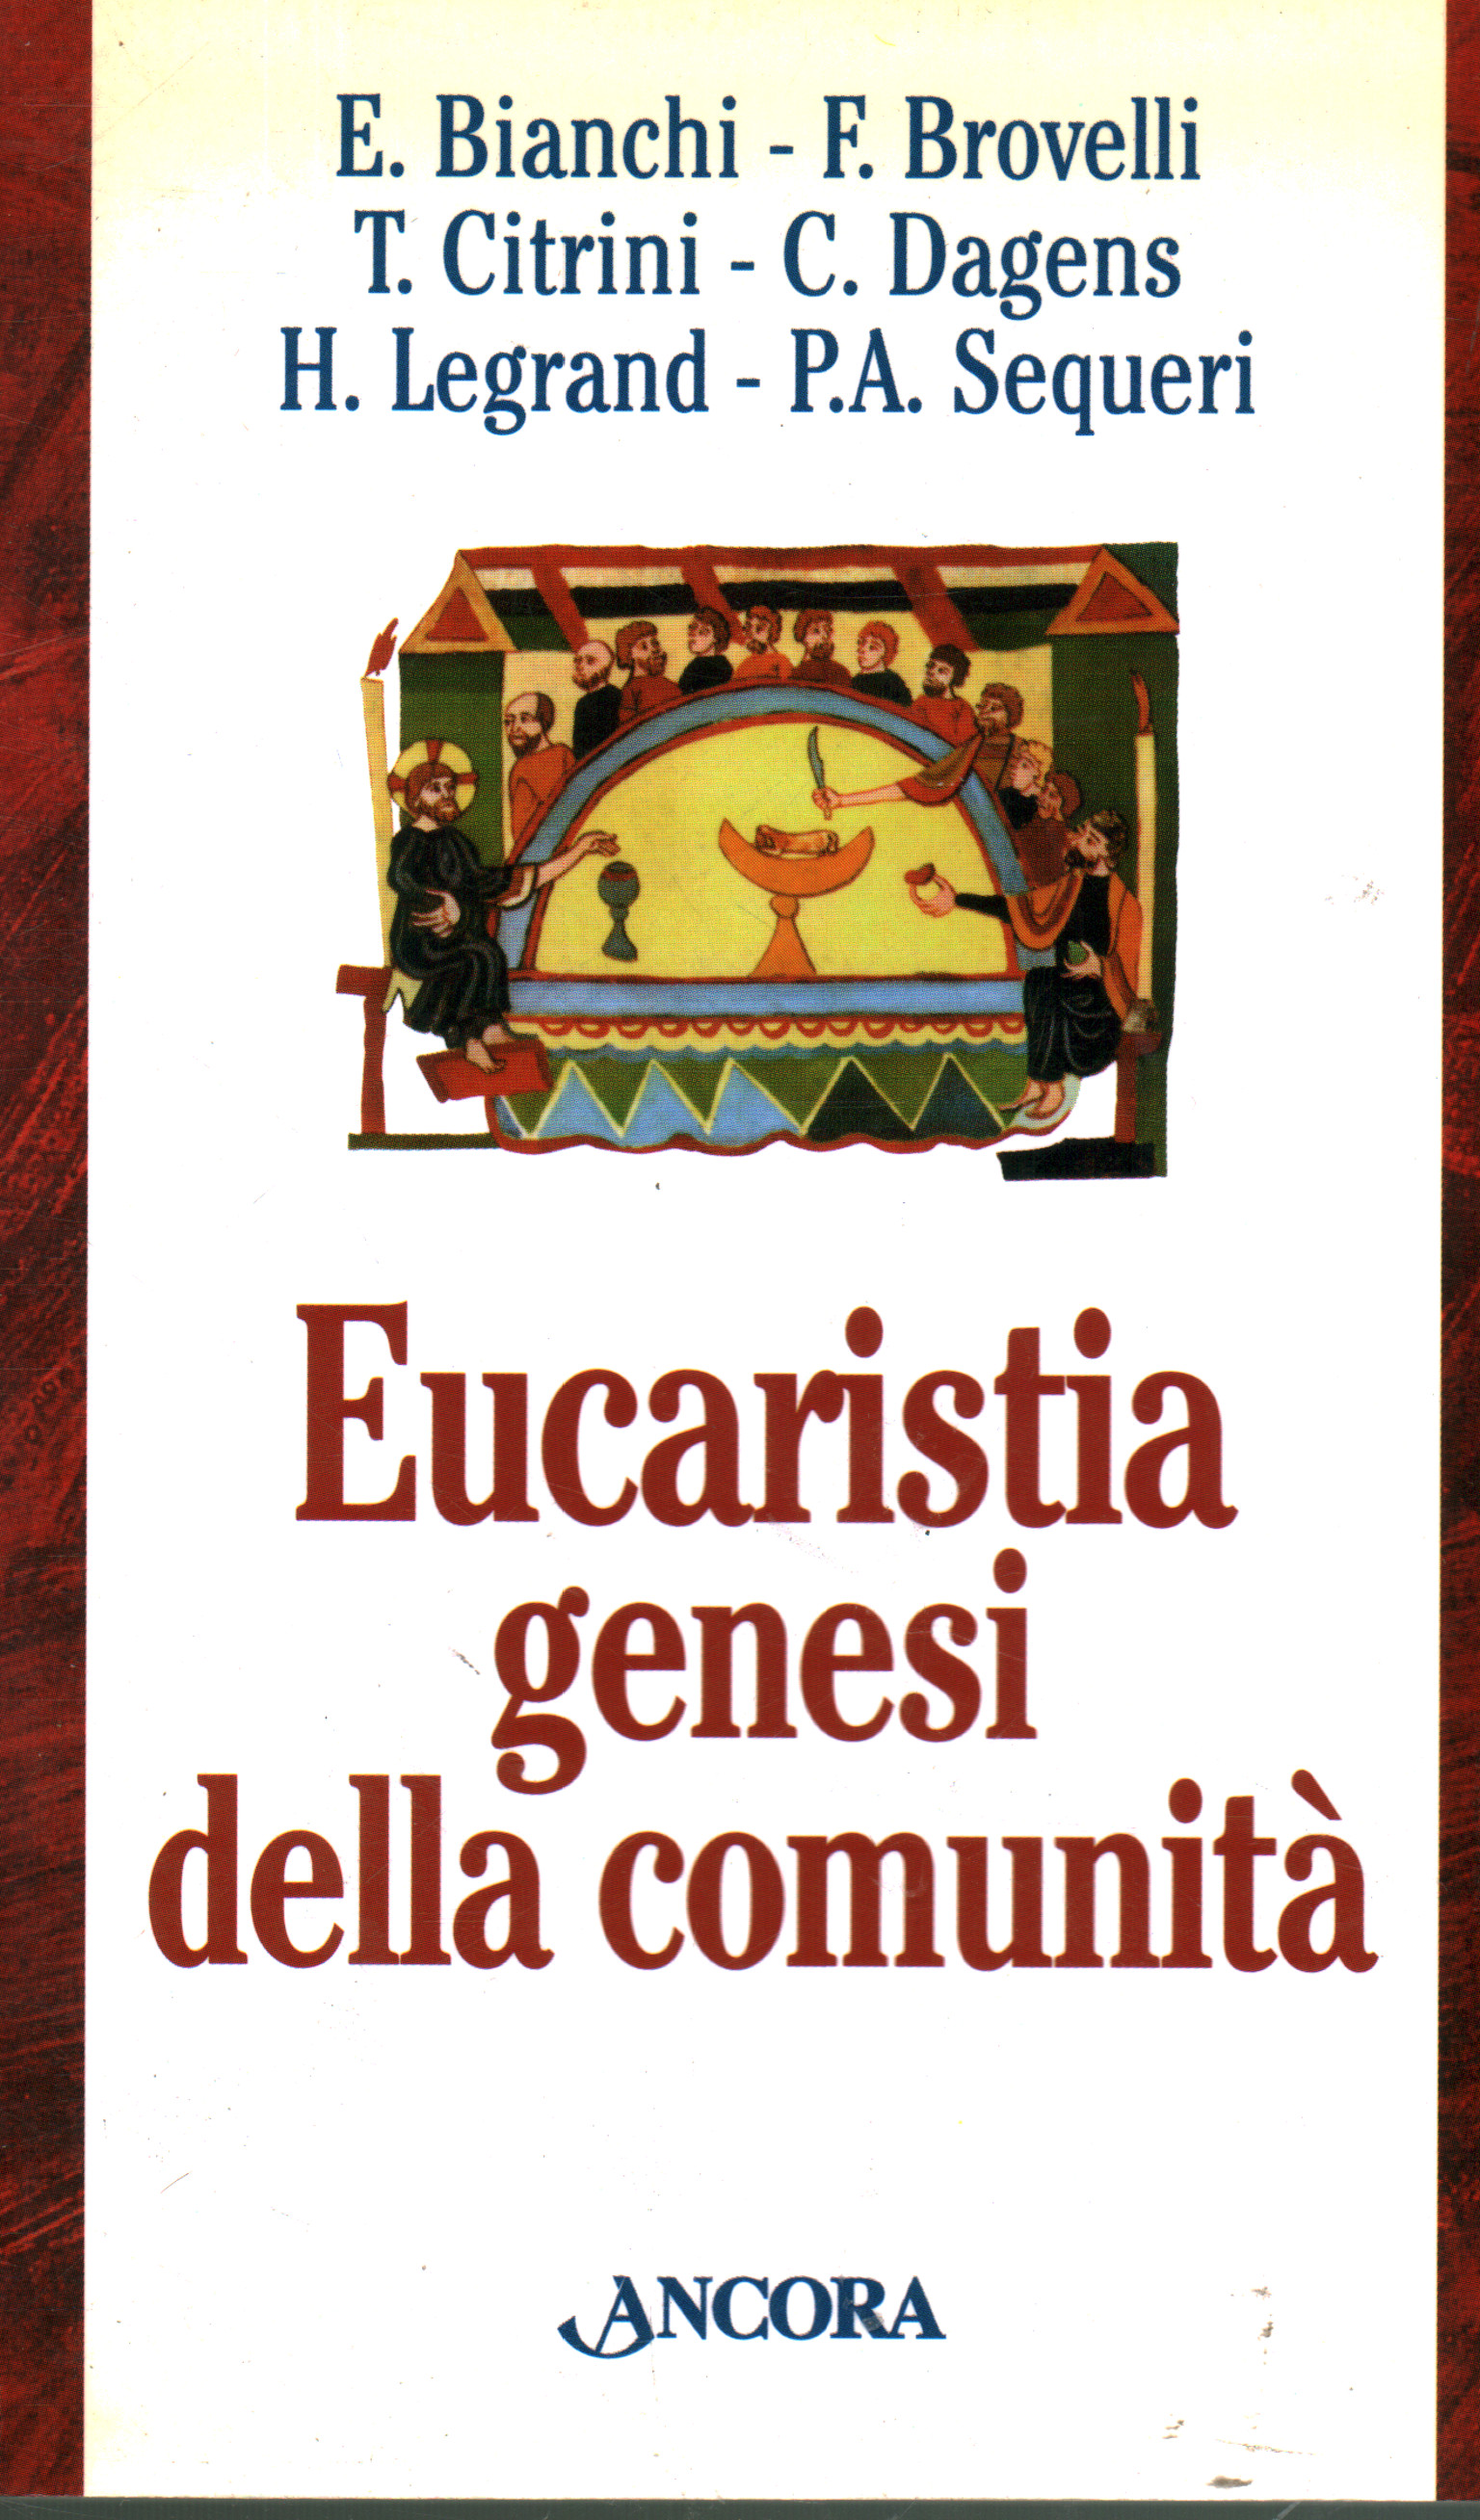 Eucaristia genesi della comunità